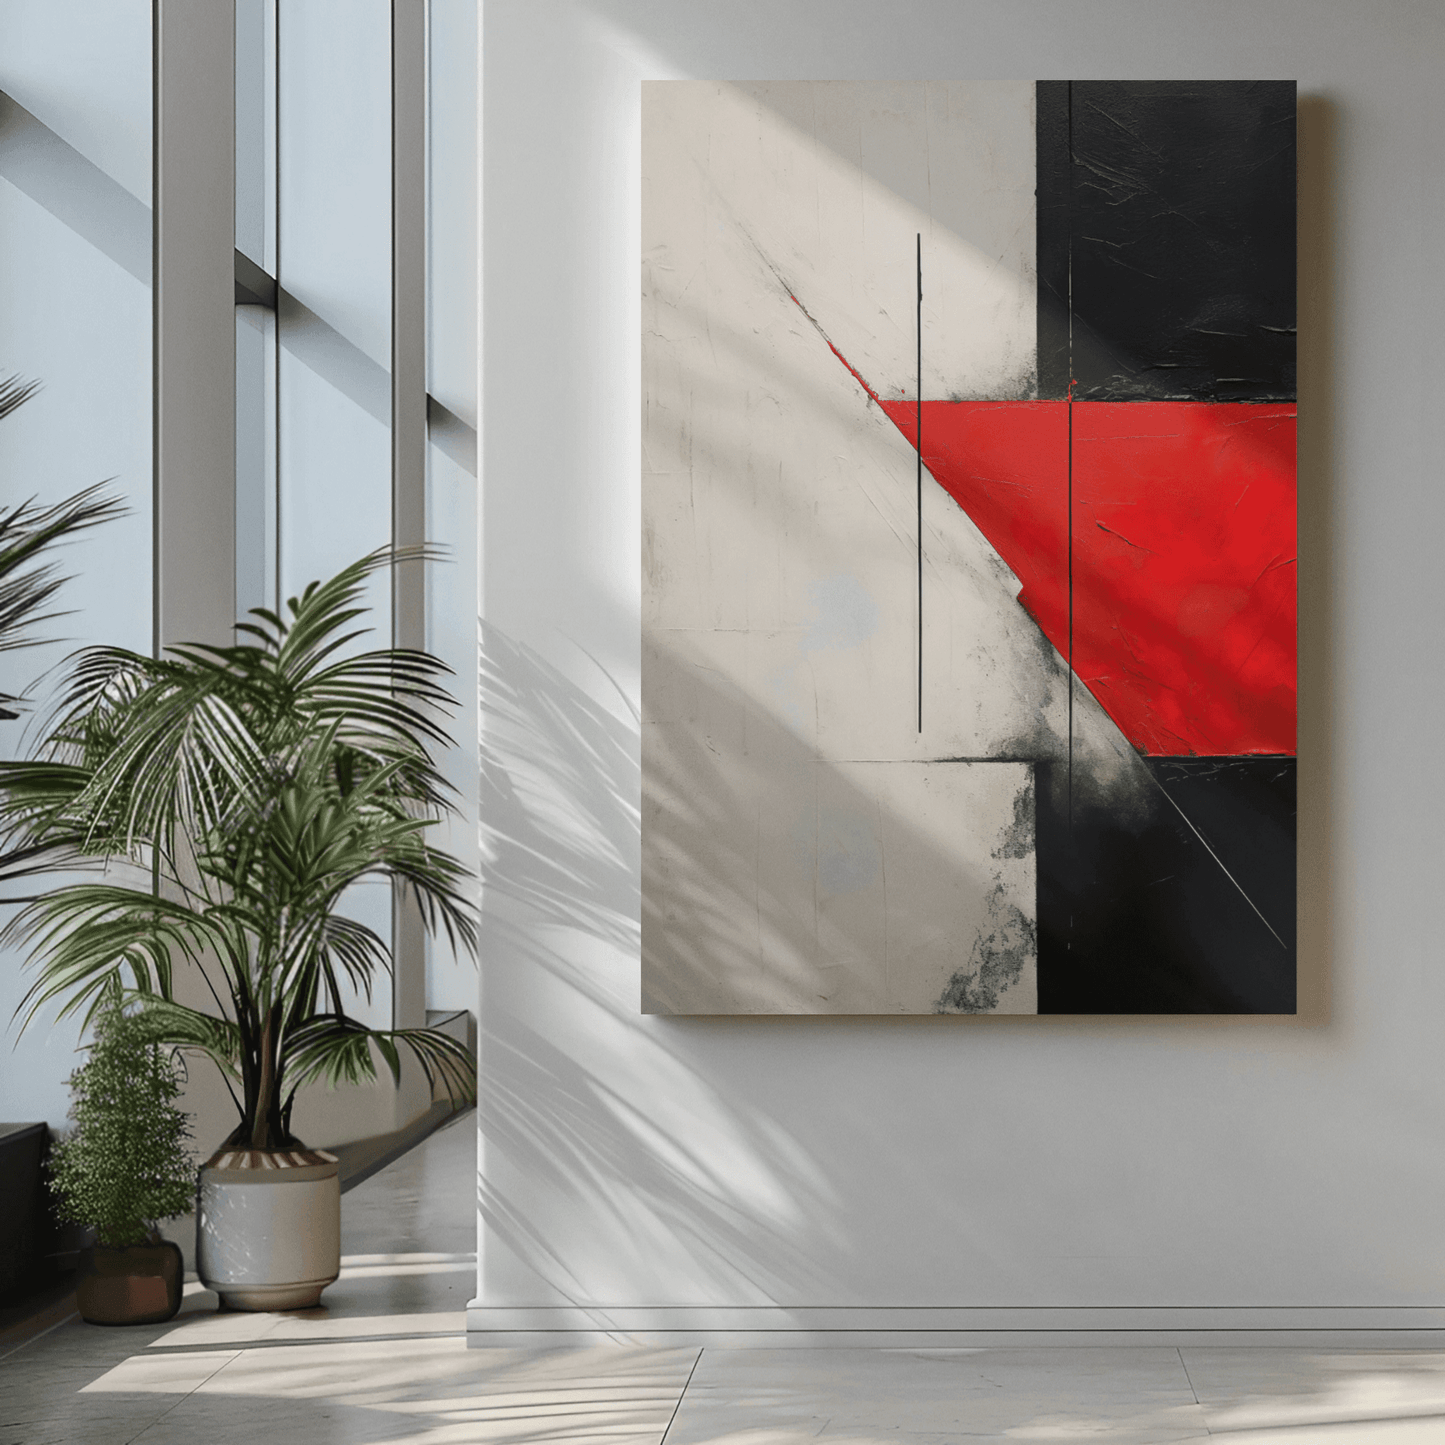 Textura abstracta en rojo y negro - Inspirada en Lucio Fontana - Lienzo